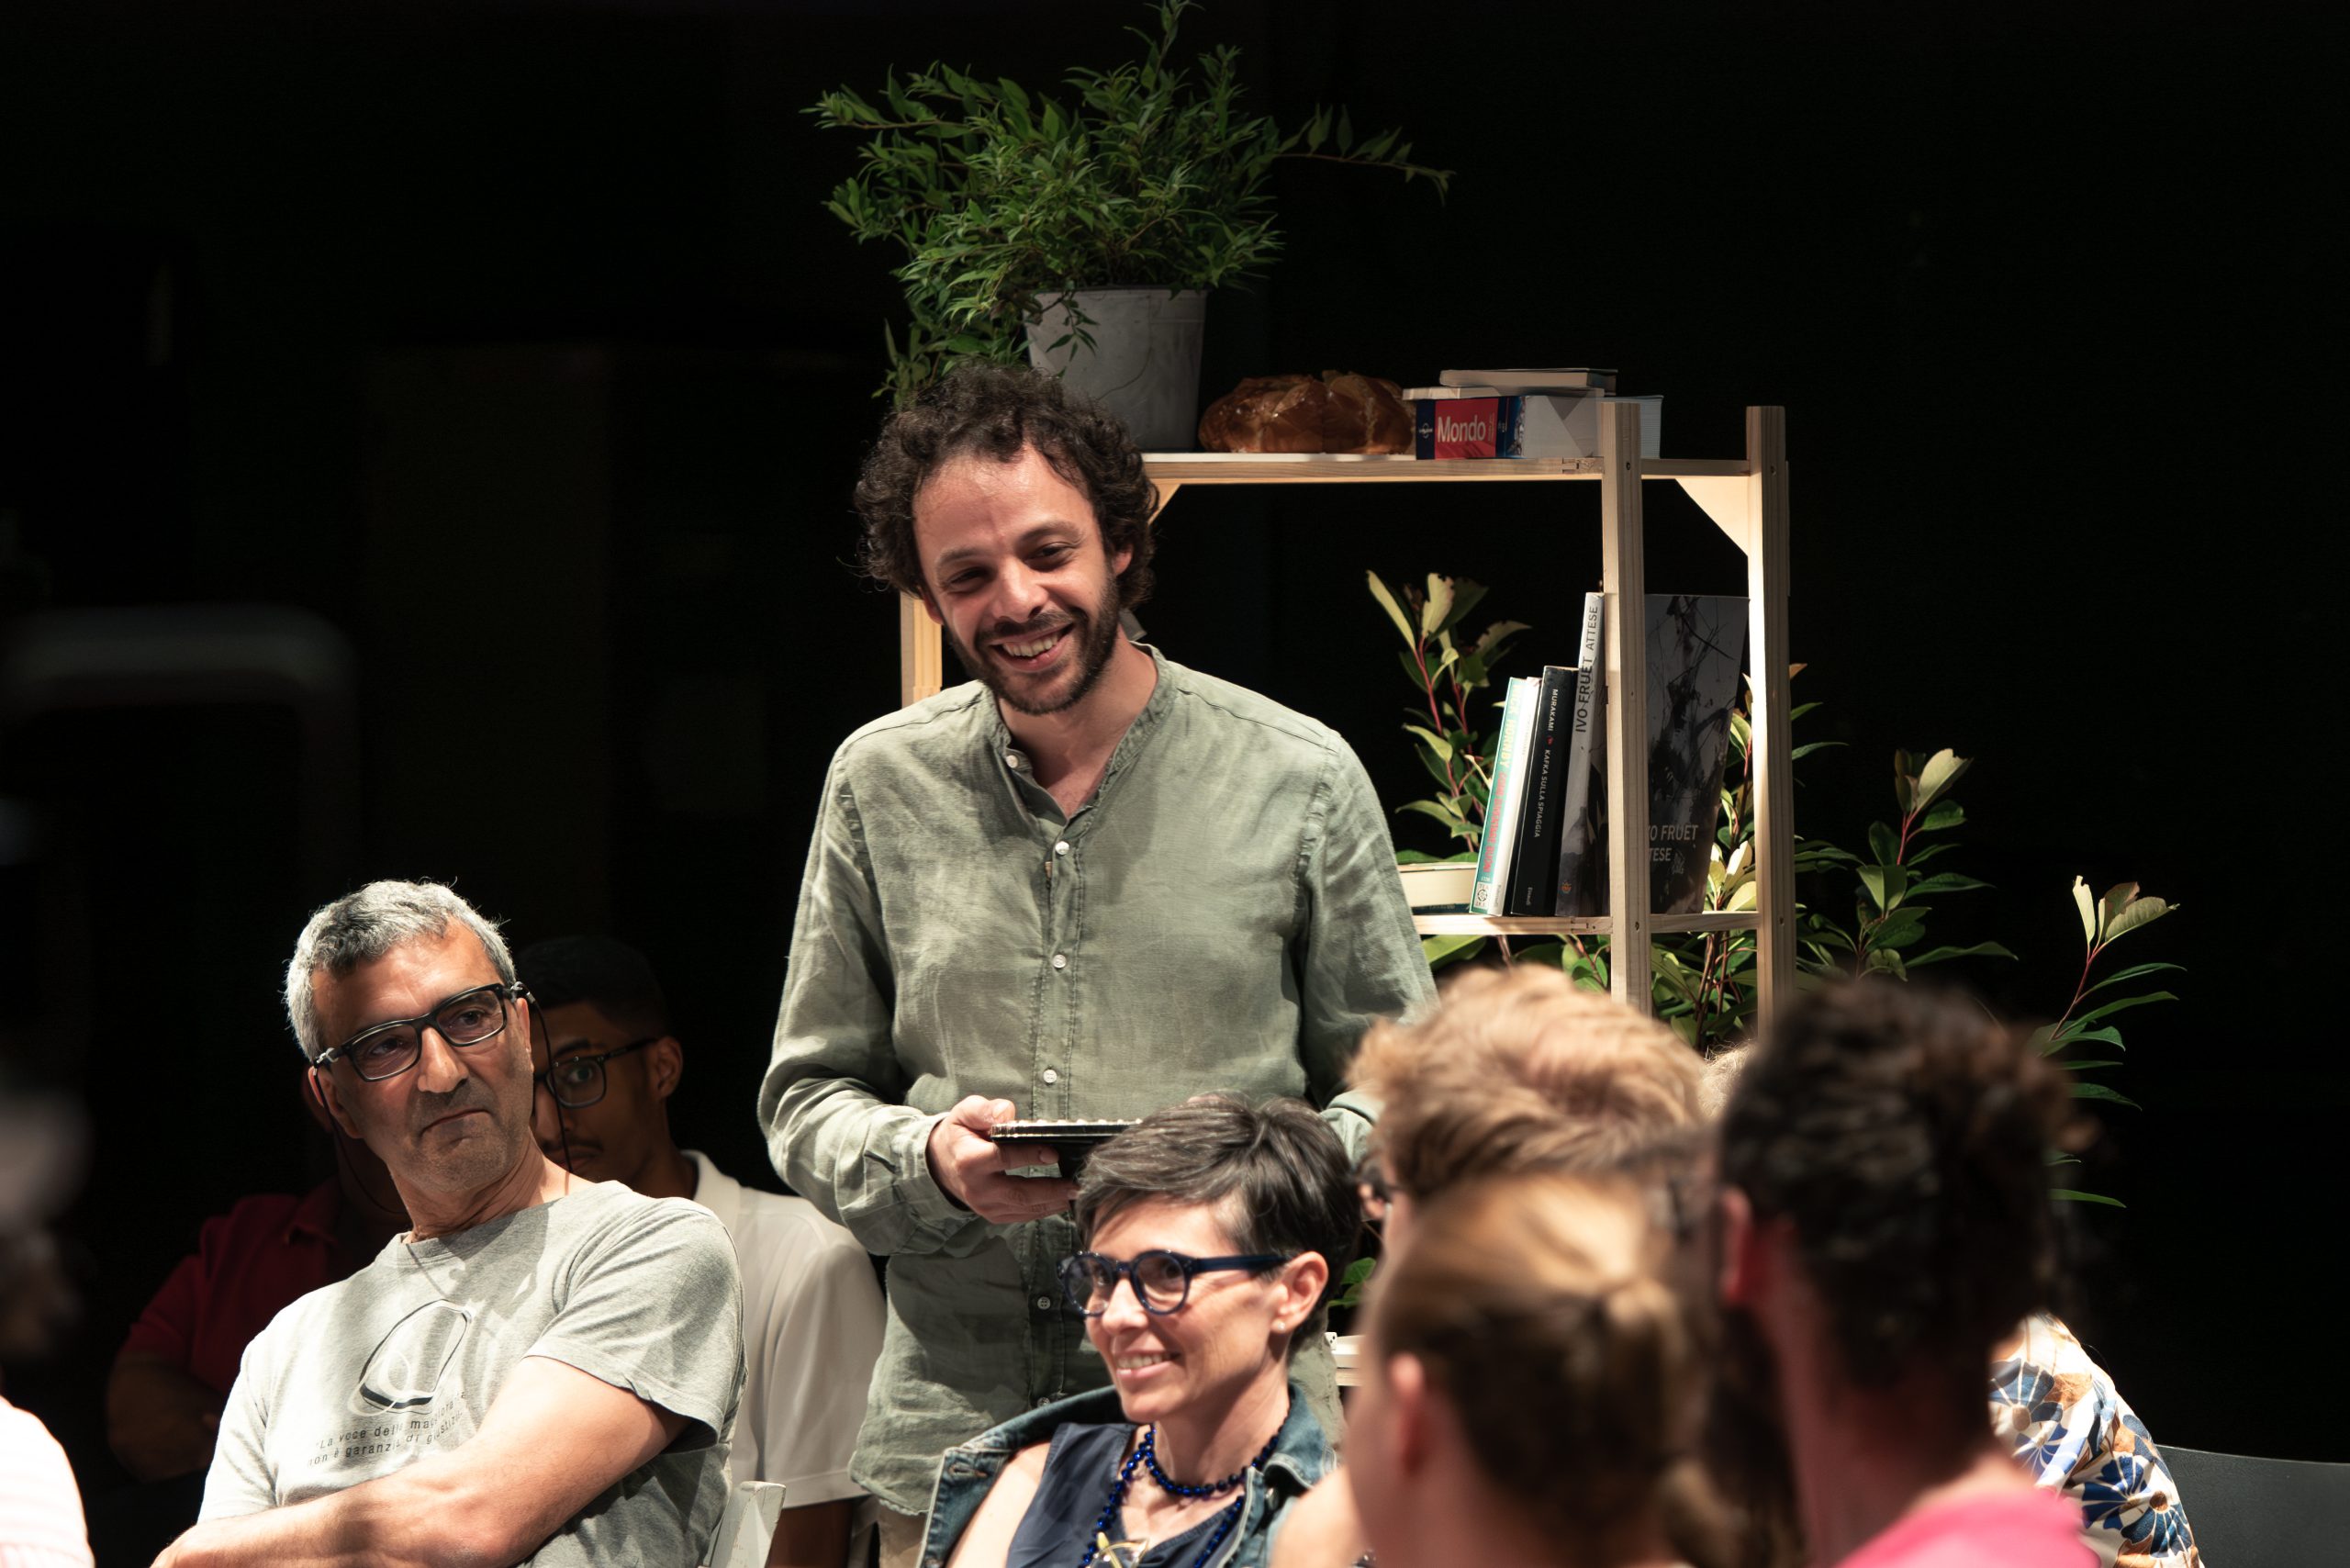 L'attore Nicola Borghesi, circondato dal pubblico, sorregge una cornice e sorride.